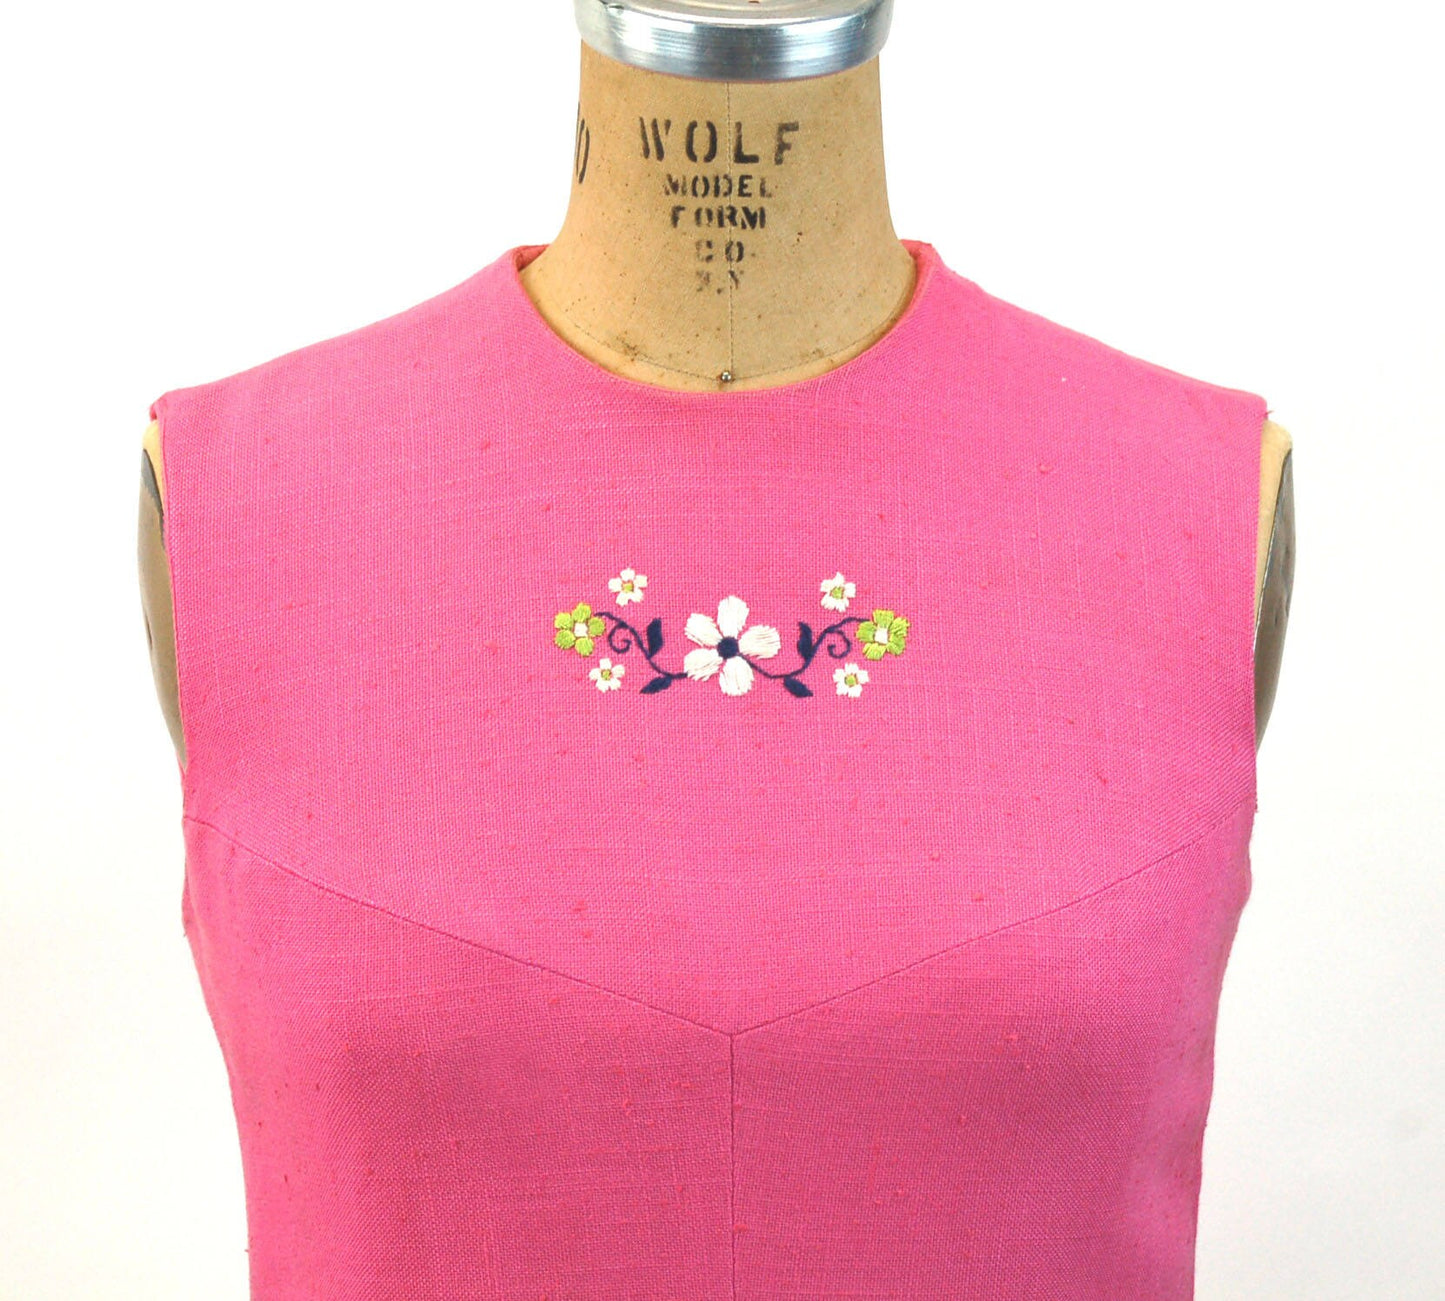 1960s linen dress shift dress summer dress pink embroidered dress Pamela Martin Size M